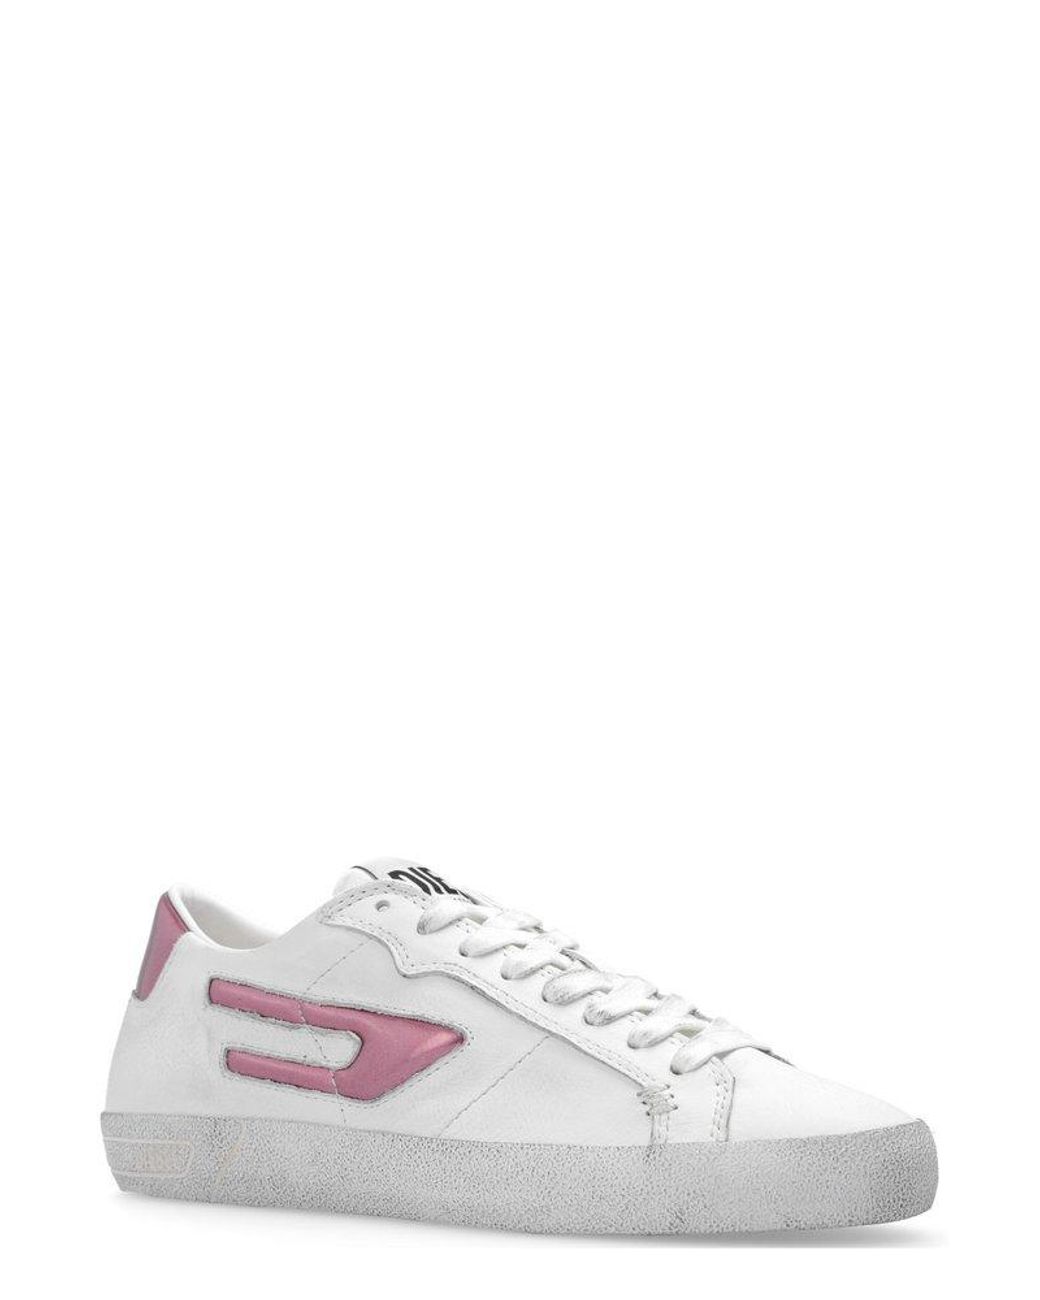 DIESEL S-leroji Metallic D Logo Sneakers in White | Lyst